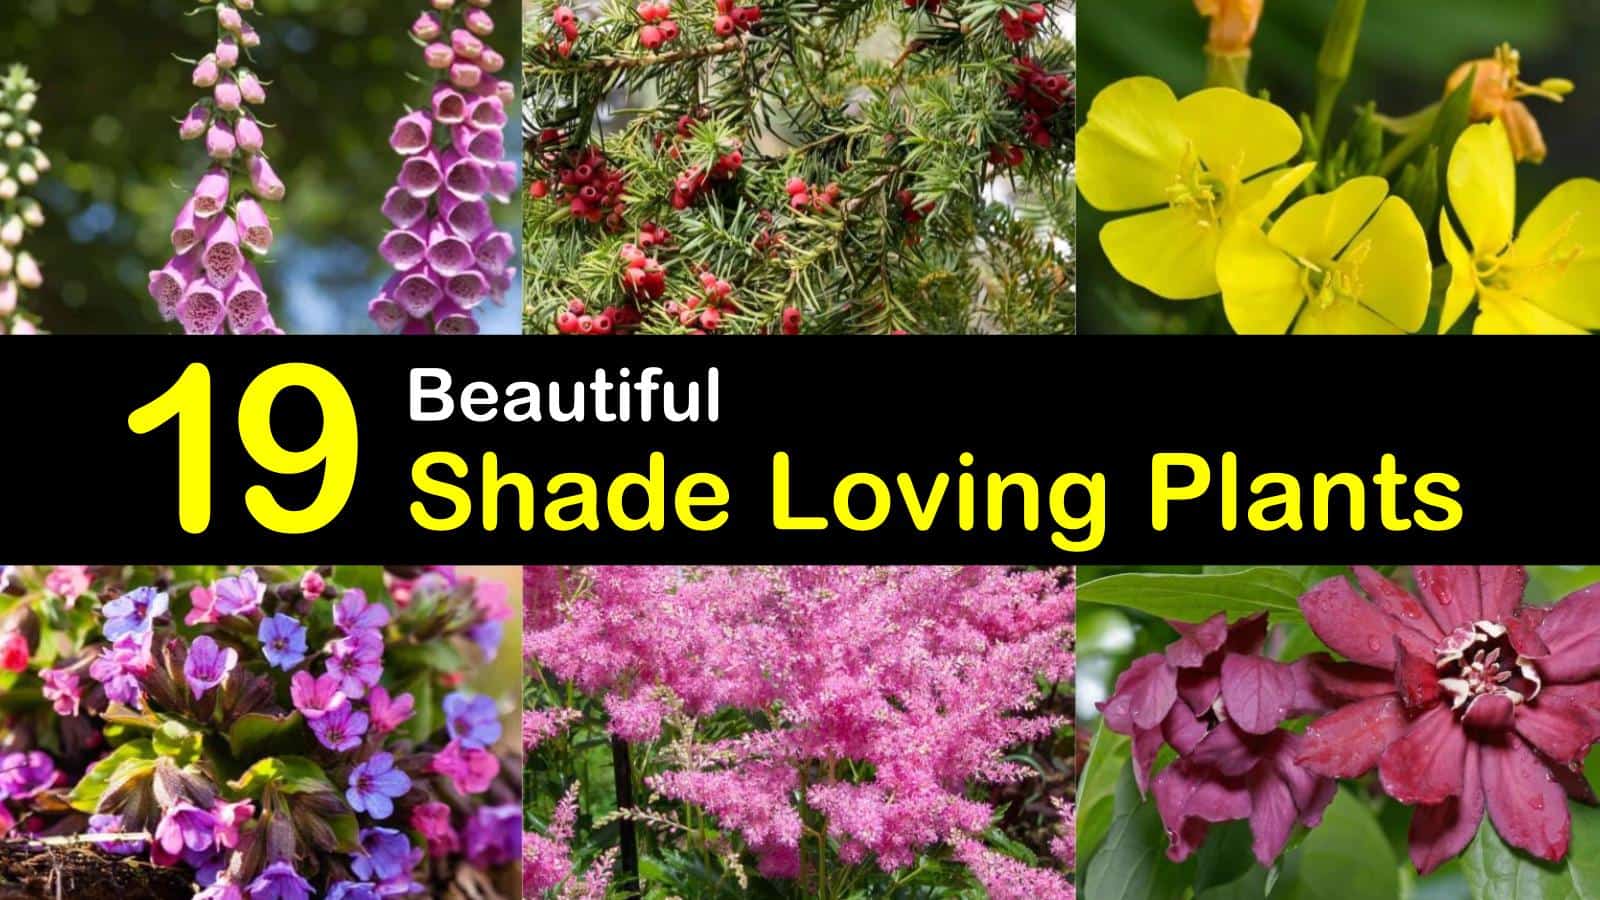 shade loving plants titleimg1